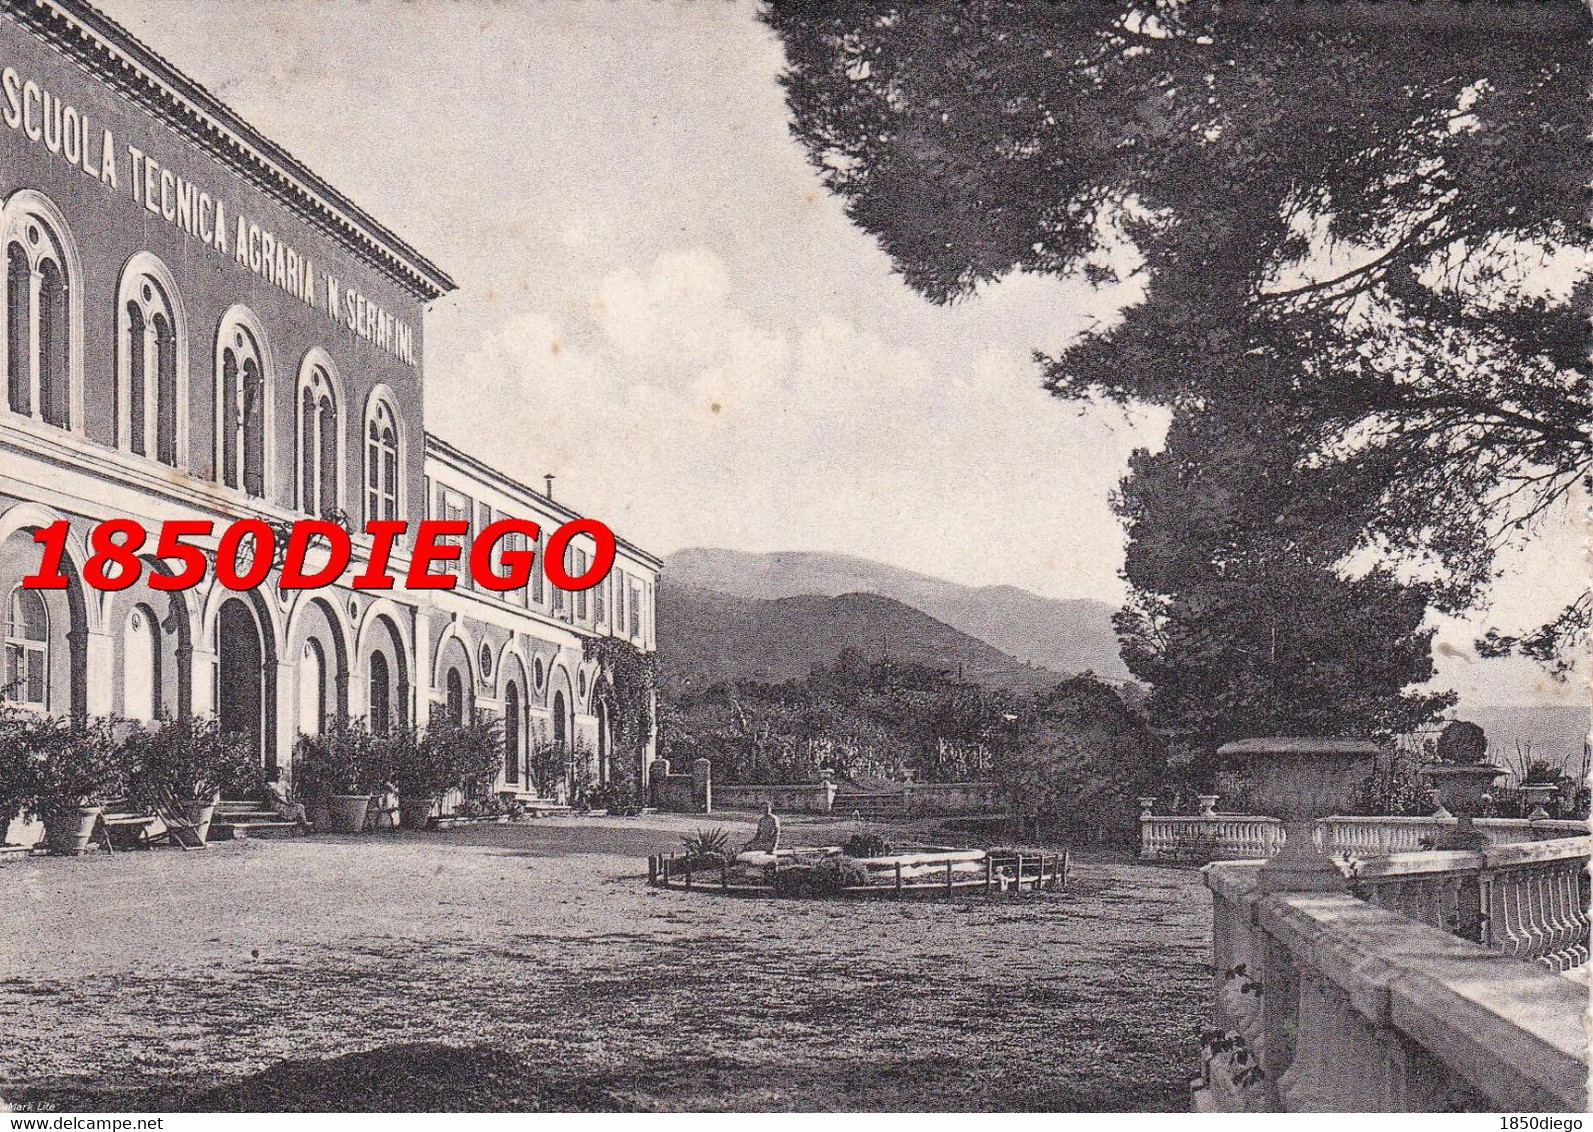 FABRIANO - SCUOLA TECNICA AGRARIA N. SERAFINI F/GRANDE VIAGGIATA 1955 - Ancona